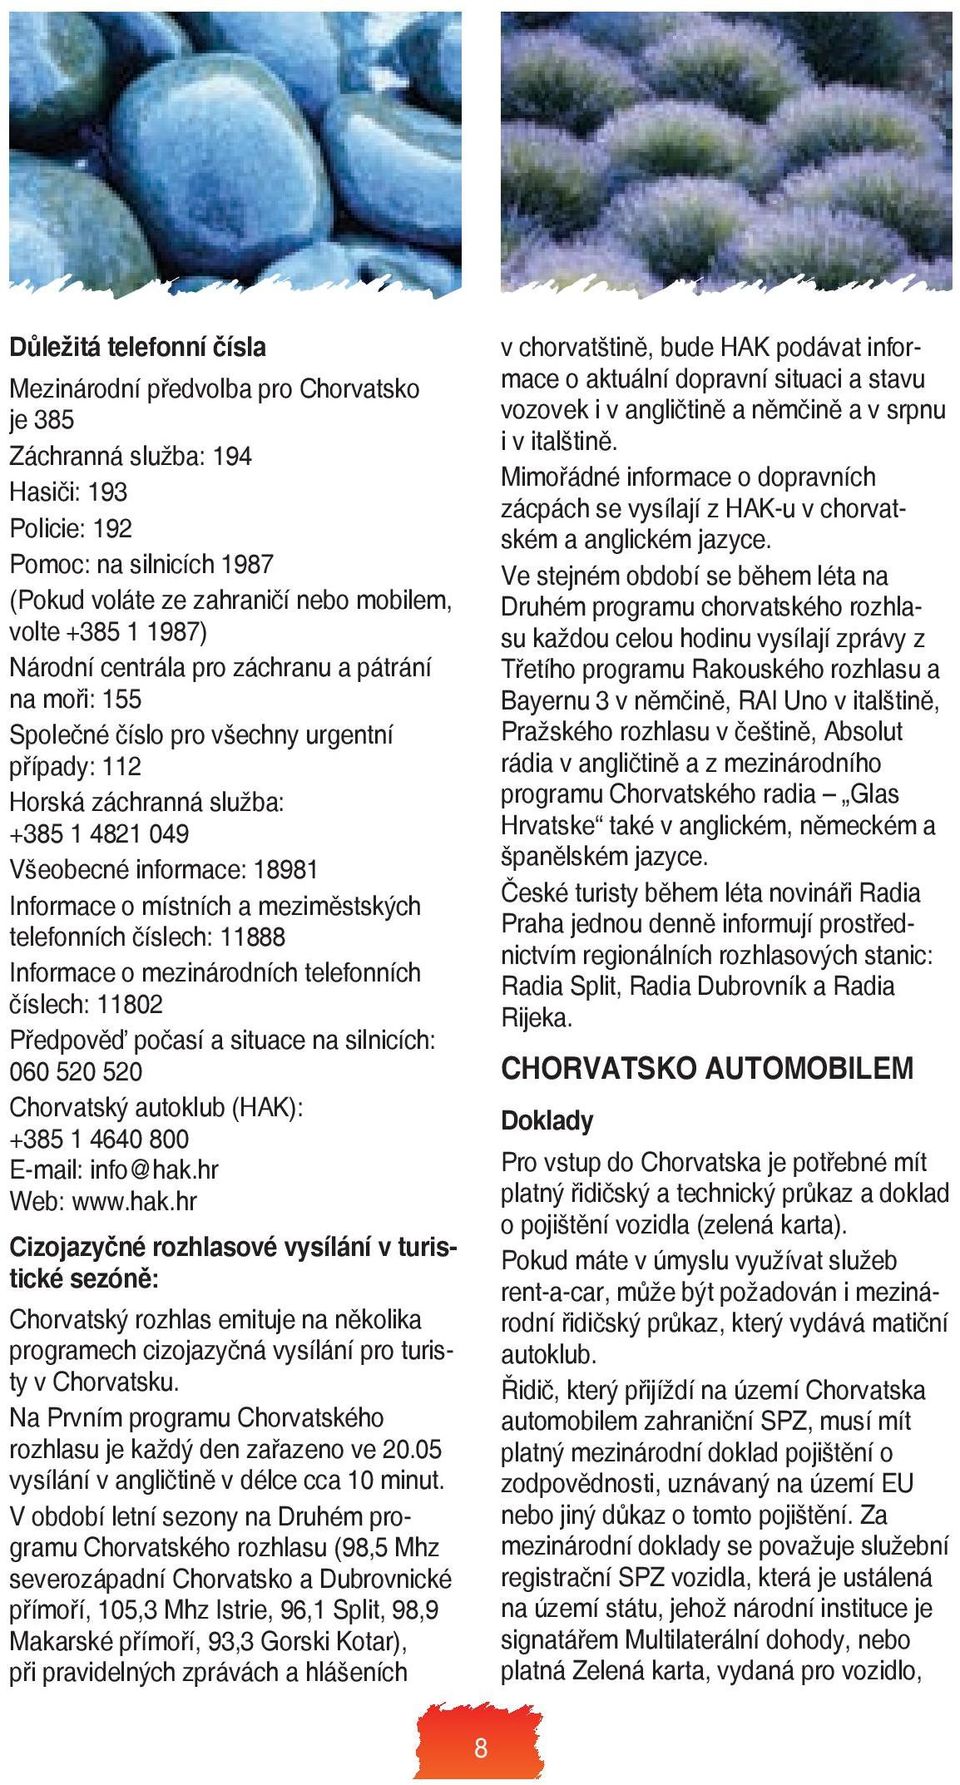 meziměstských telefonních číslech: 11888 Informace o mezinárodních telefonních číslech: 11802 Předpověď počasí a situace na silnicích: 060 520 520 Chorvatský autoklub (HAK): +385 1 4640 800 E-mail: